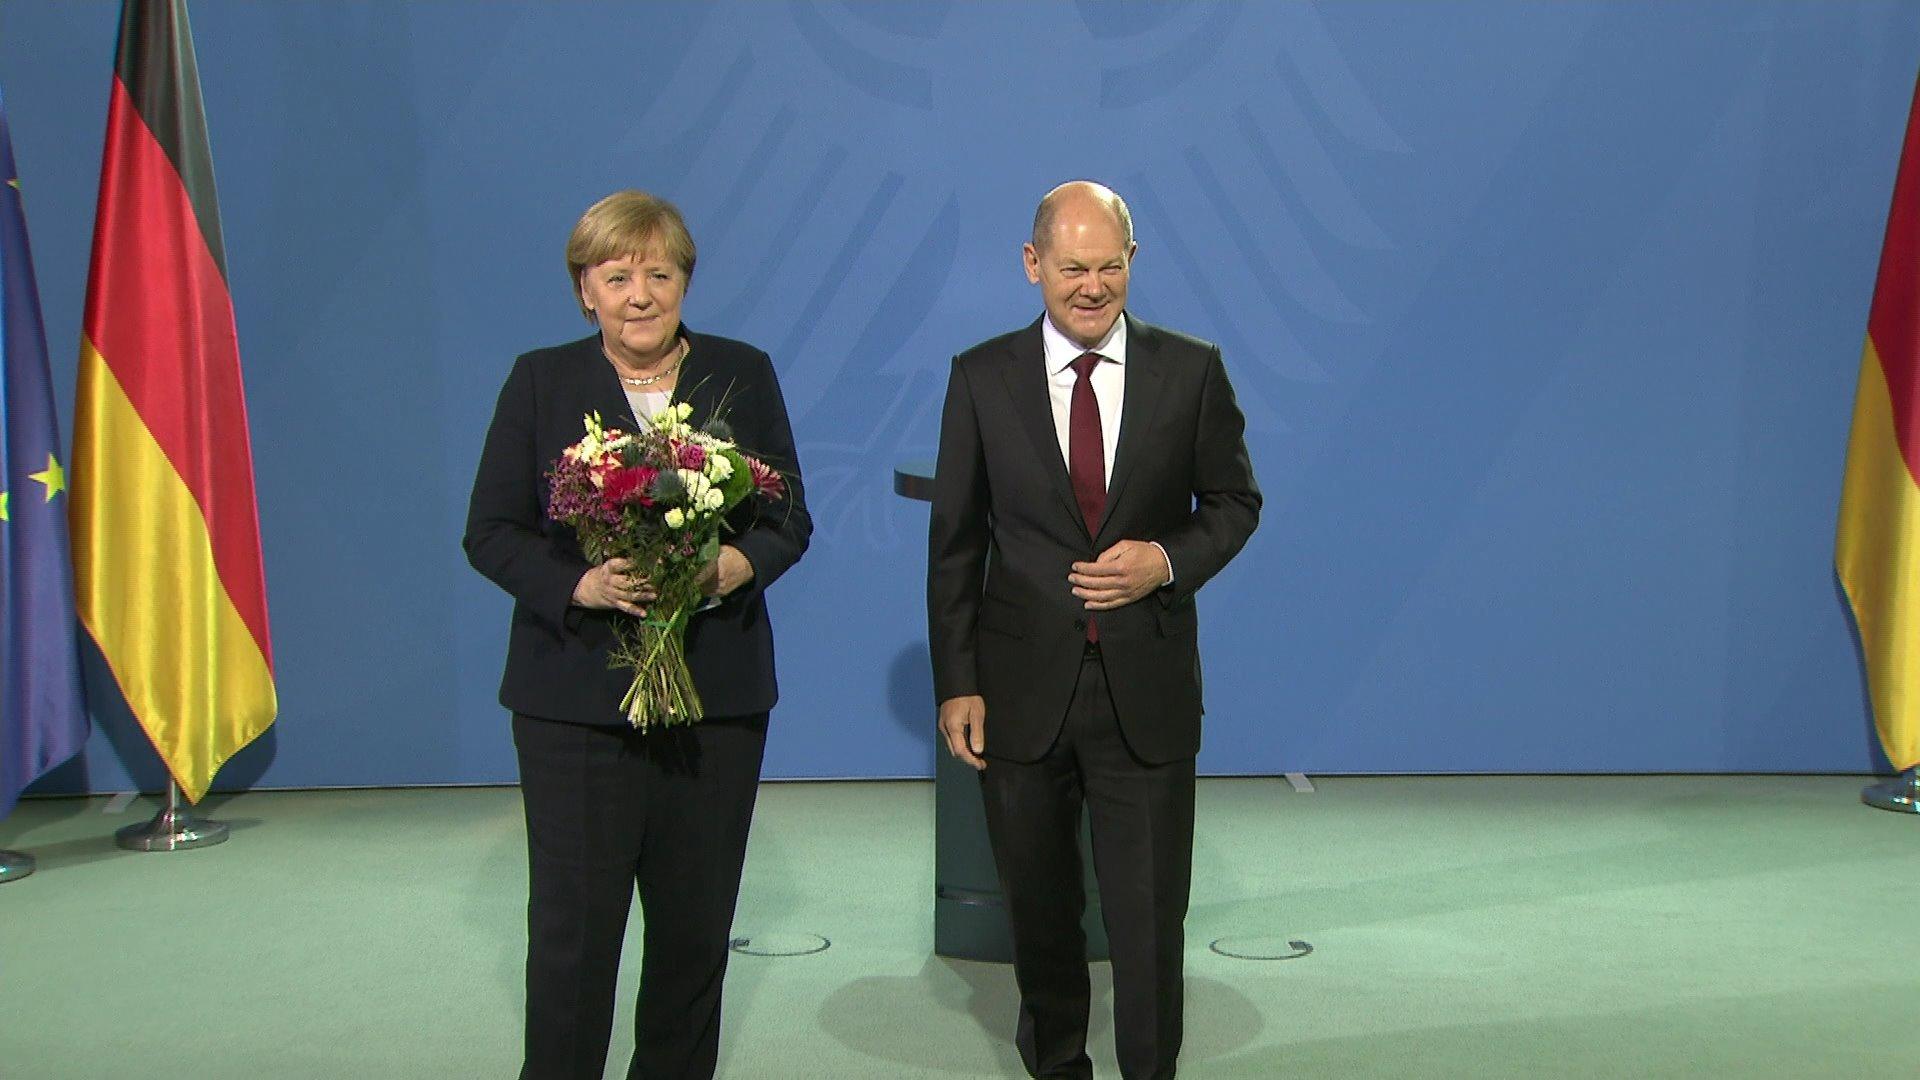 Angela Merkel übergibt Amt an Olaf Scholz Deutschland hat einen neuen Bundeskanzler